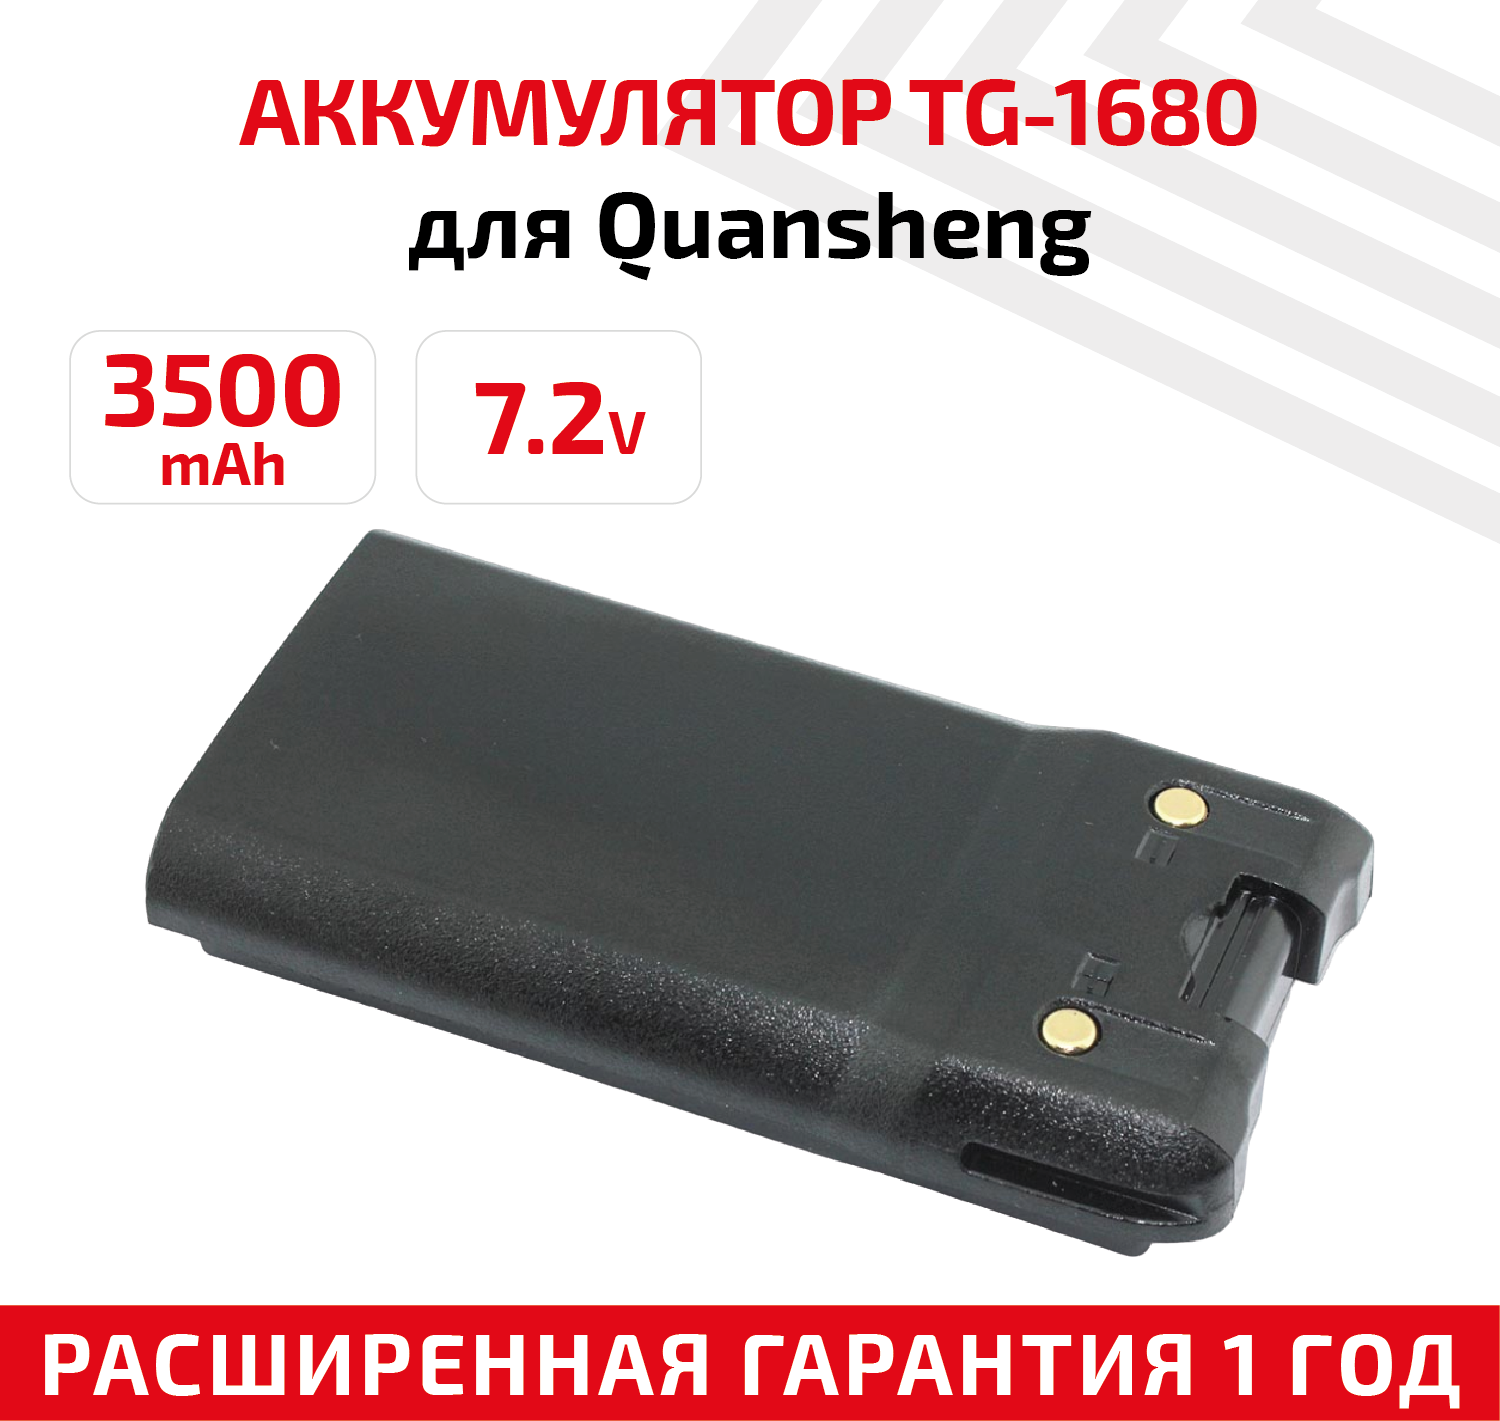 Аккумулятор для рации Quansheng TG-1680 (Vector VT-44 Turbo) 3500 мАч